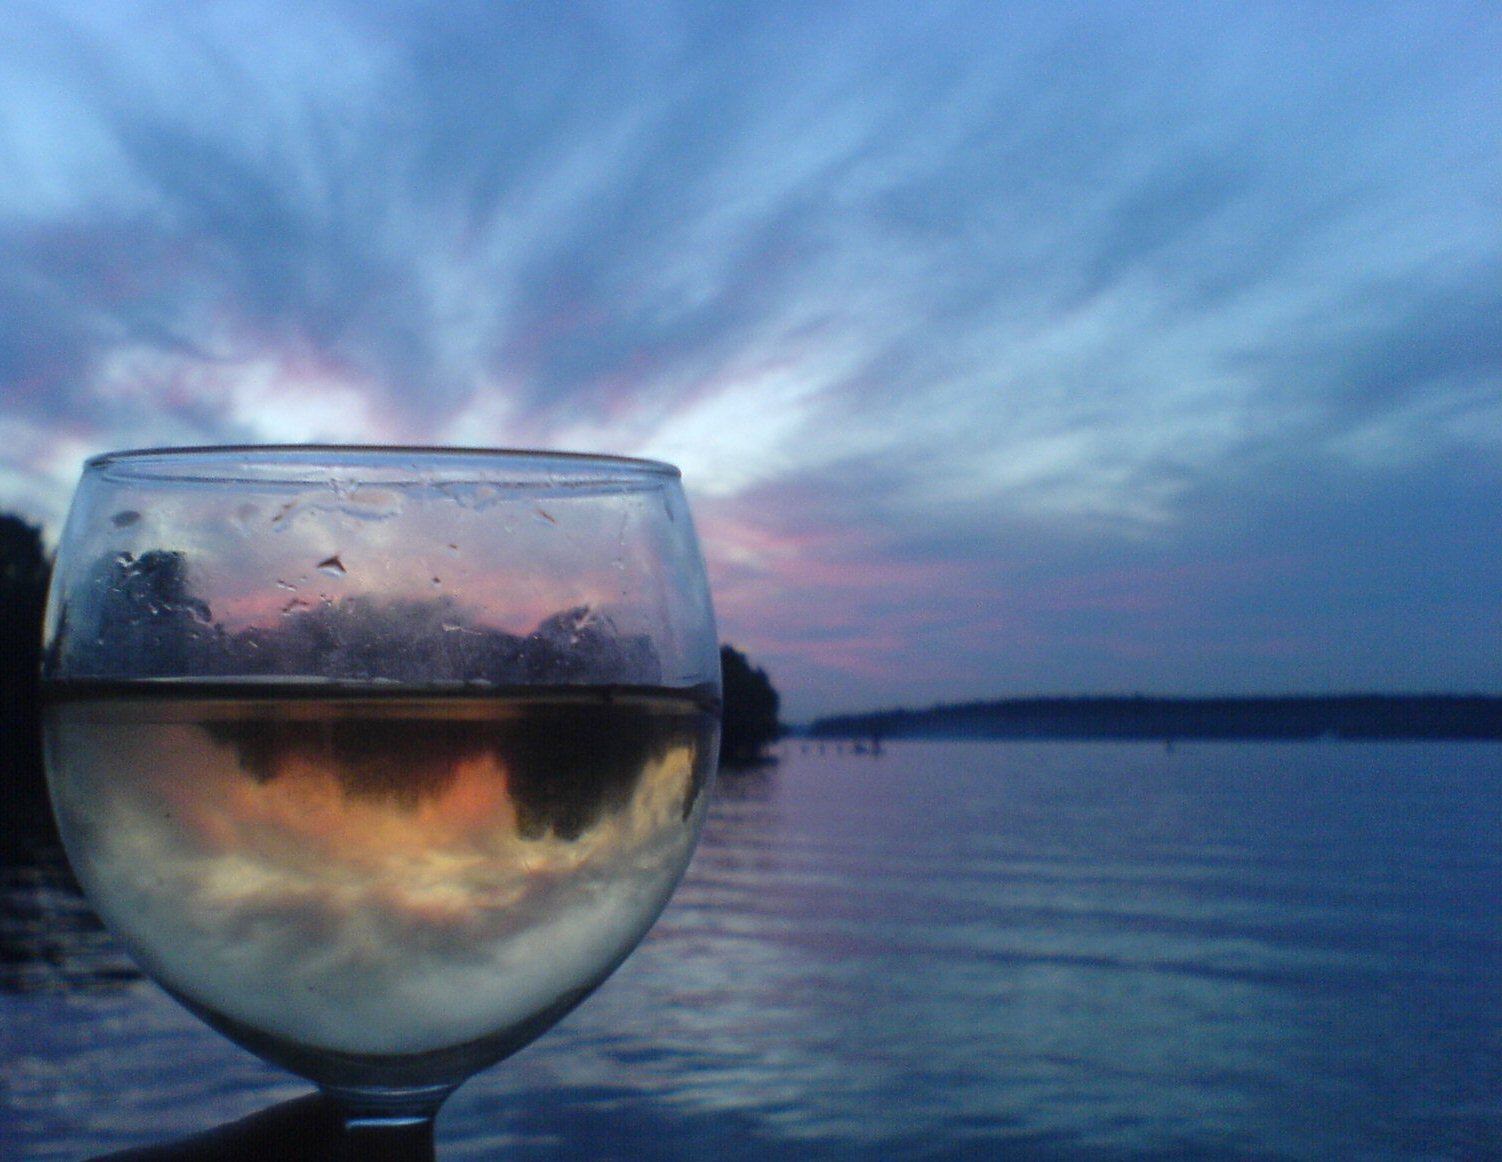 Фото бокал вина на фоне моря